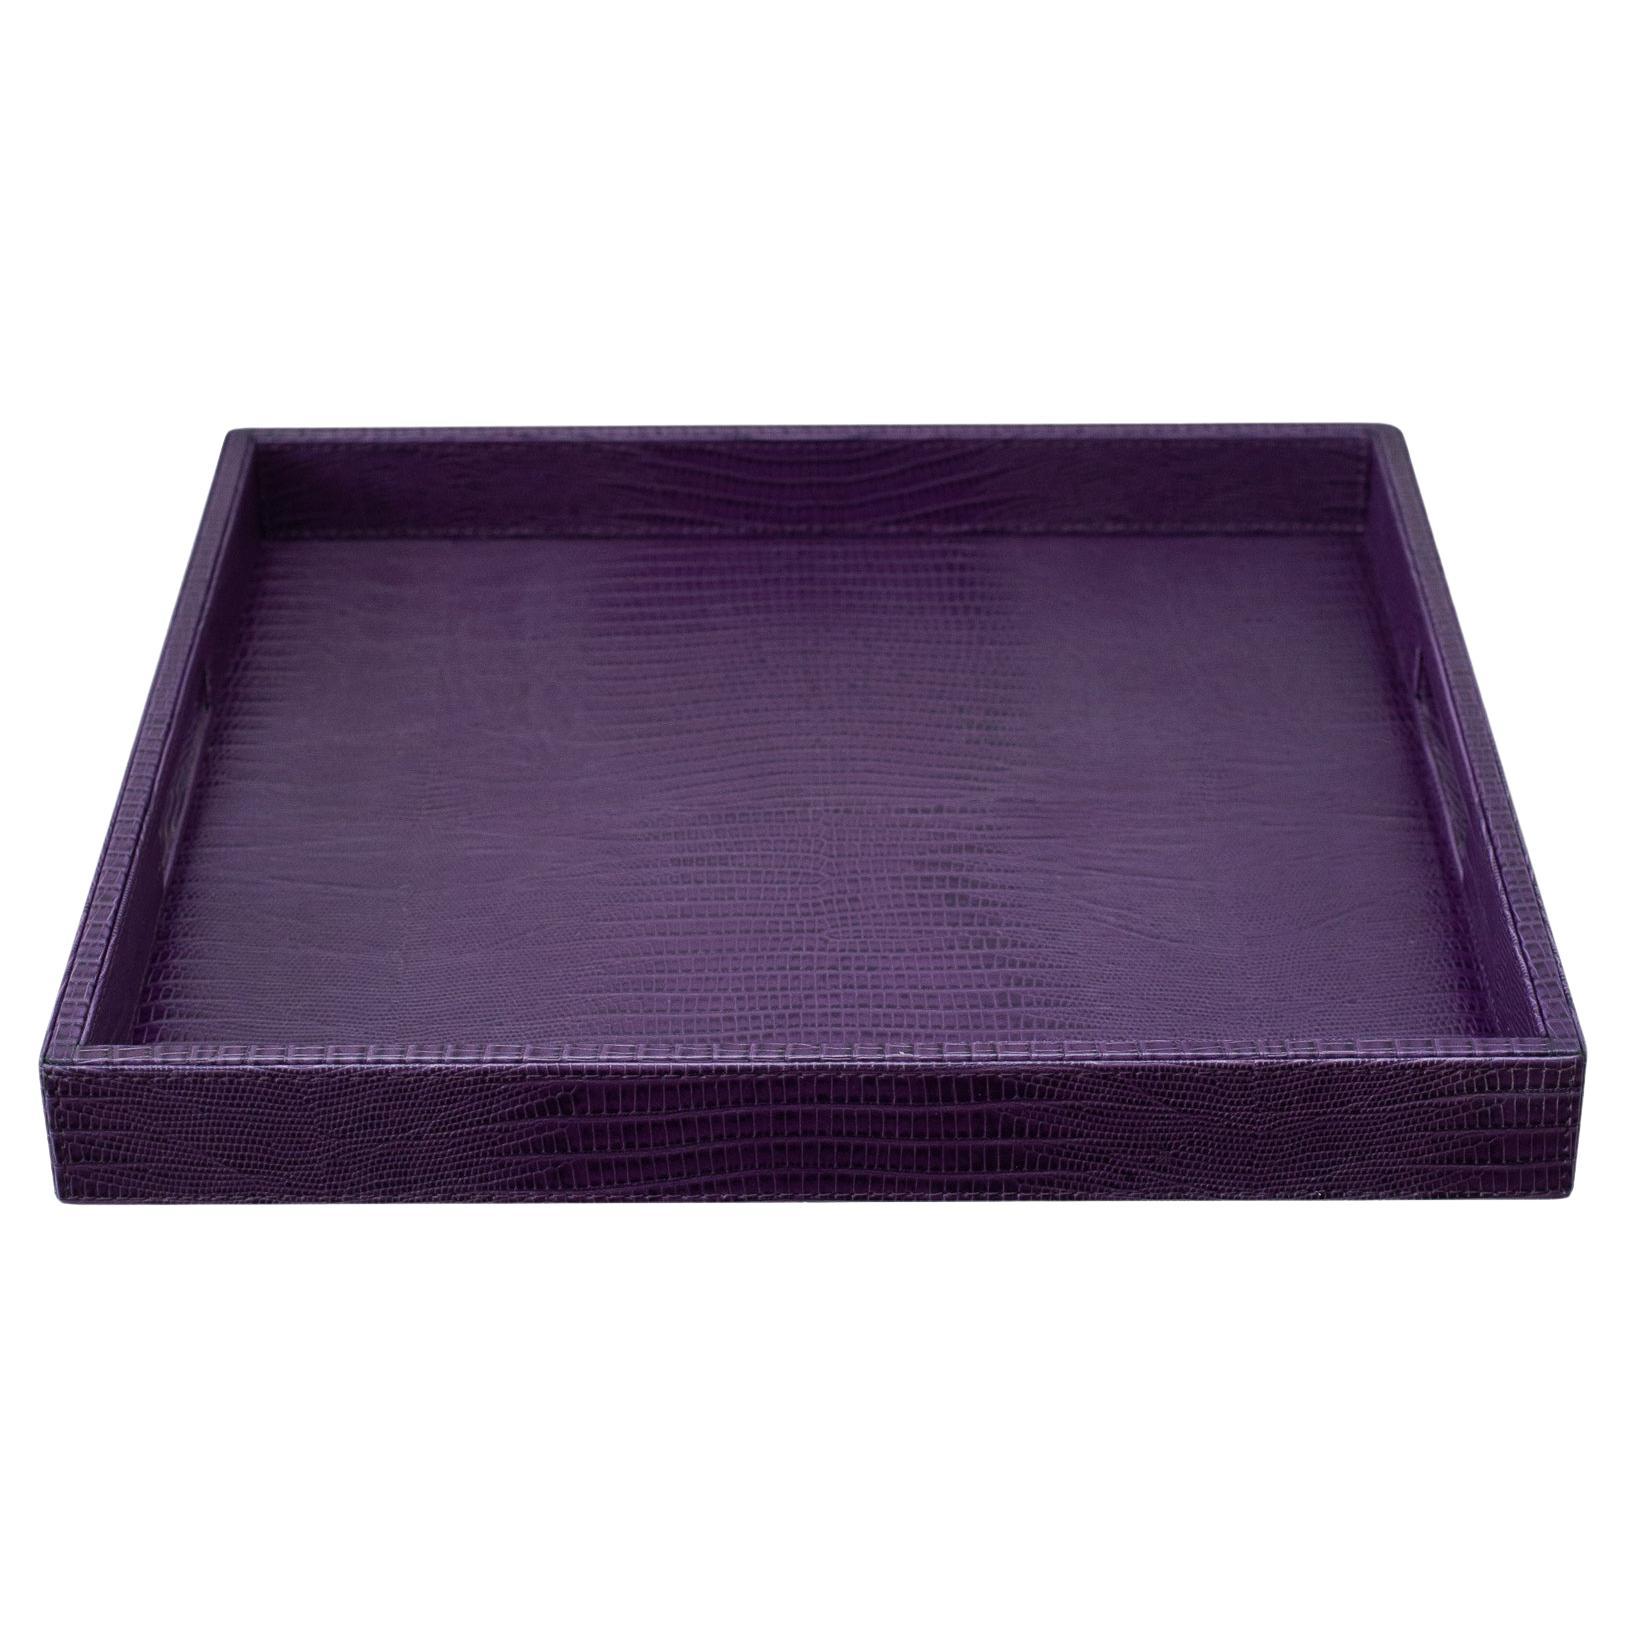 Zeitgenössische lila Eidechse geprägte Leder große quadratische Tablett 